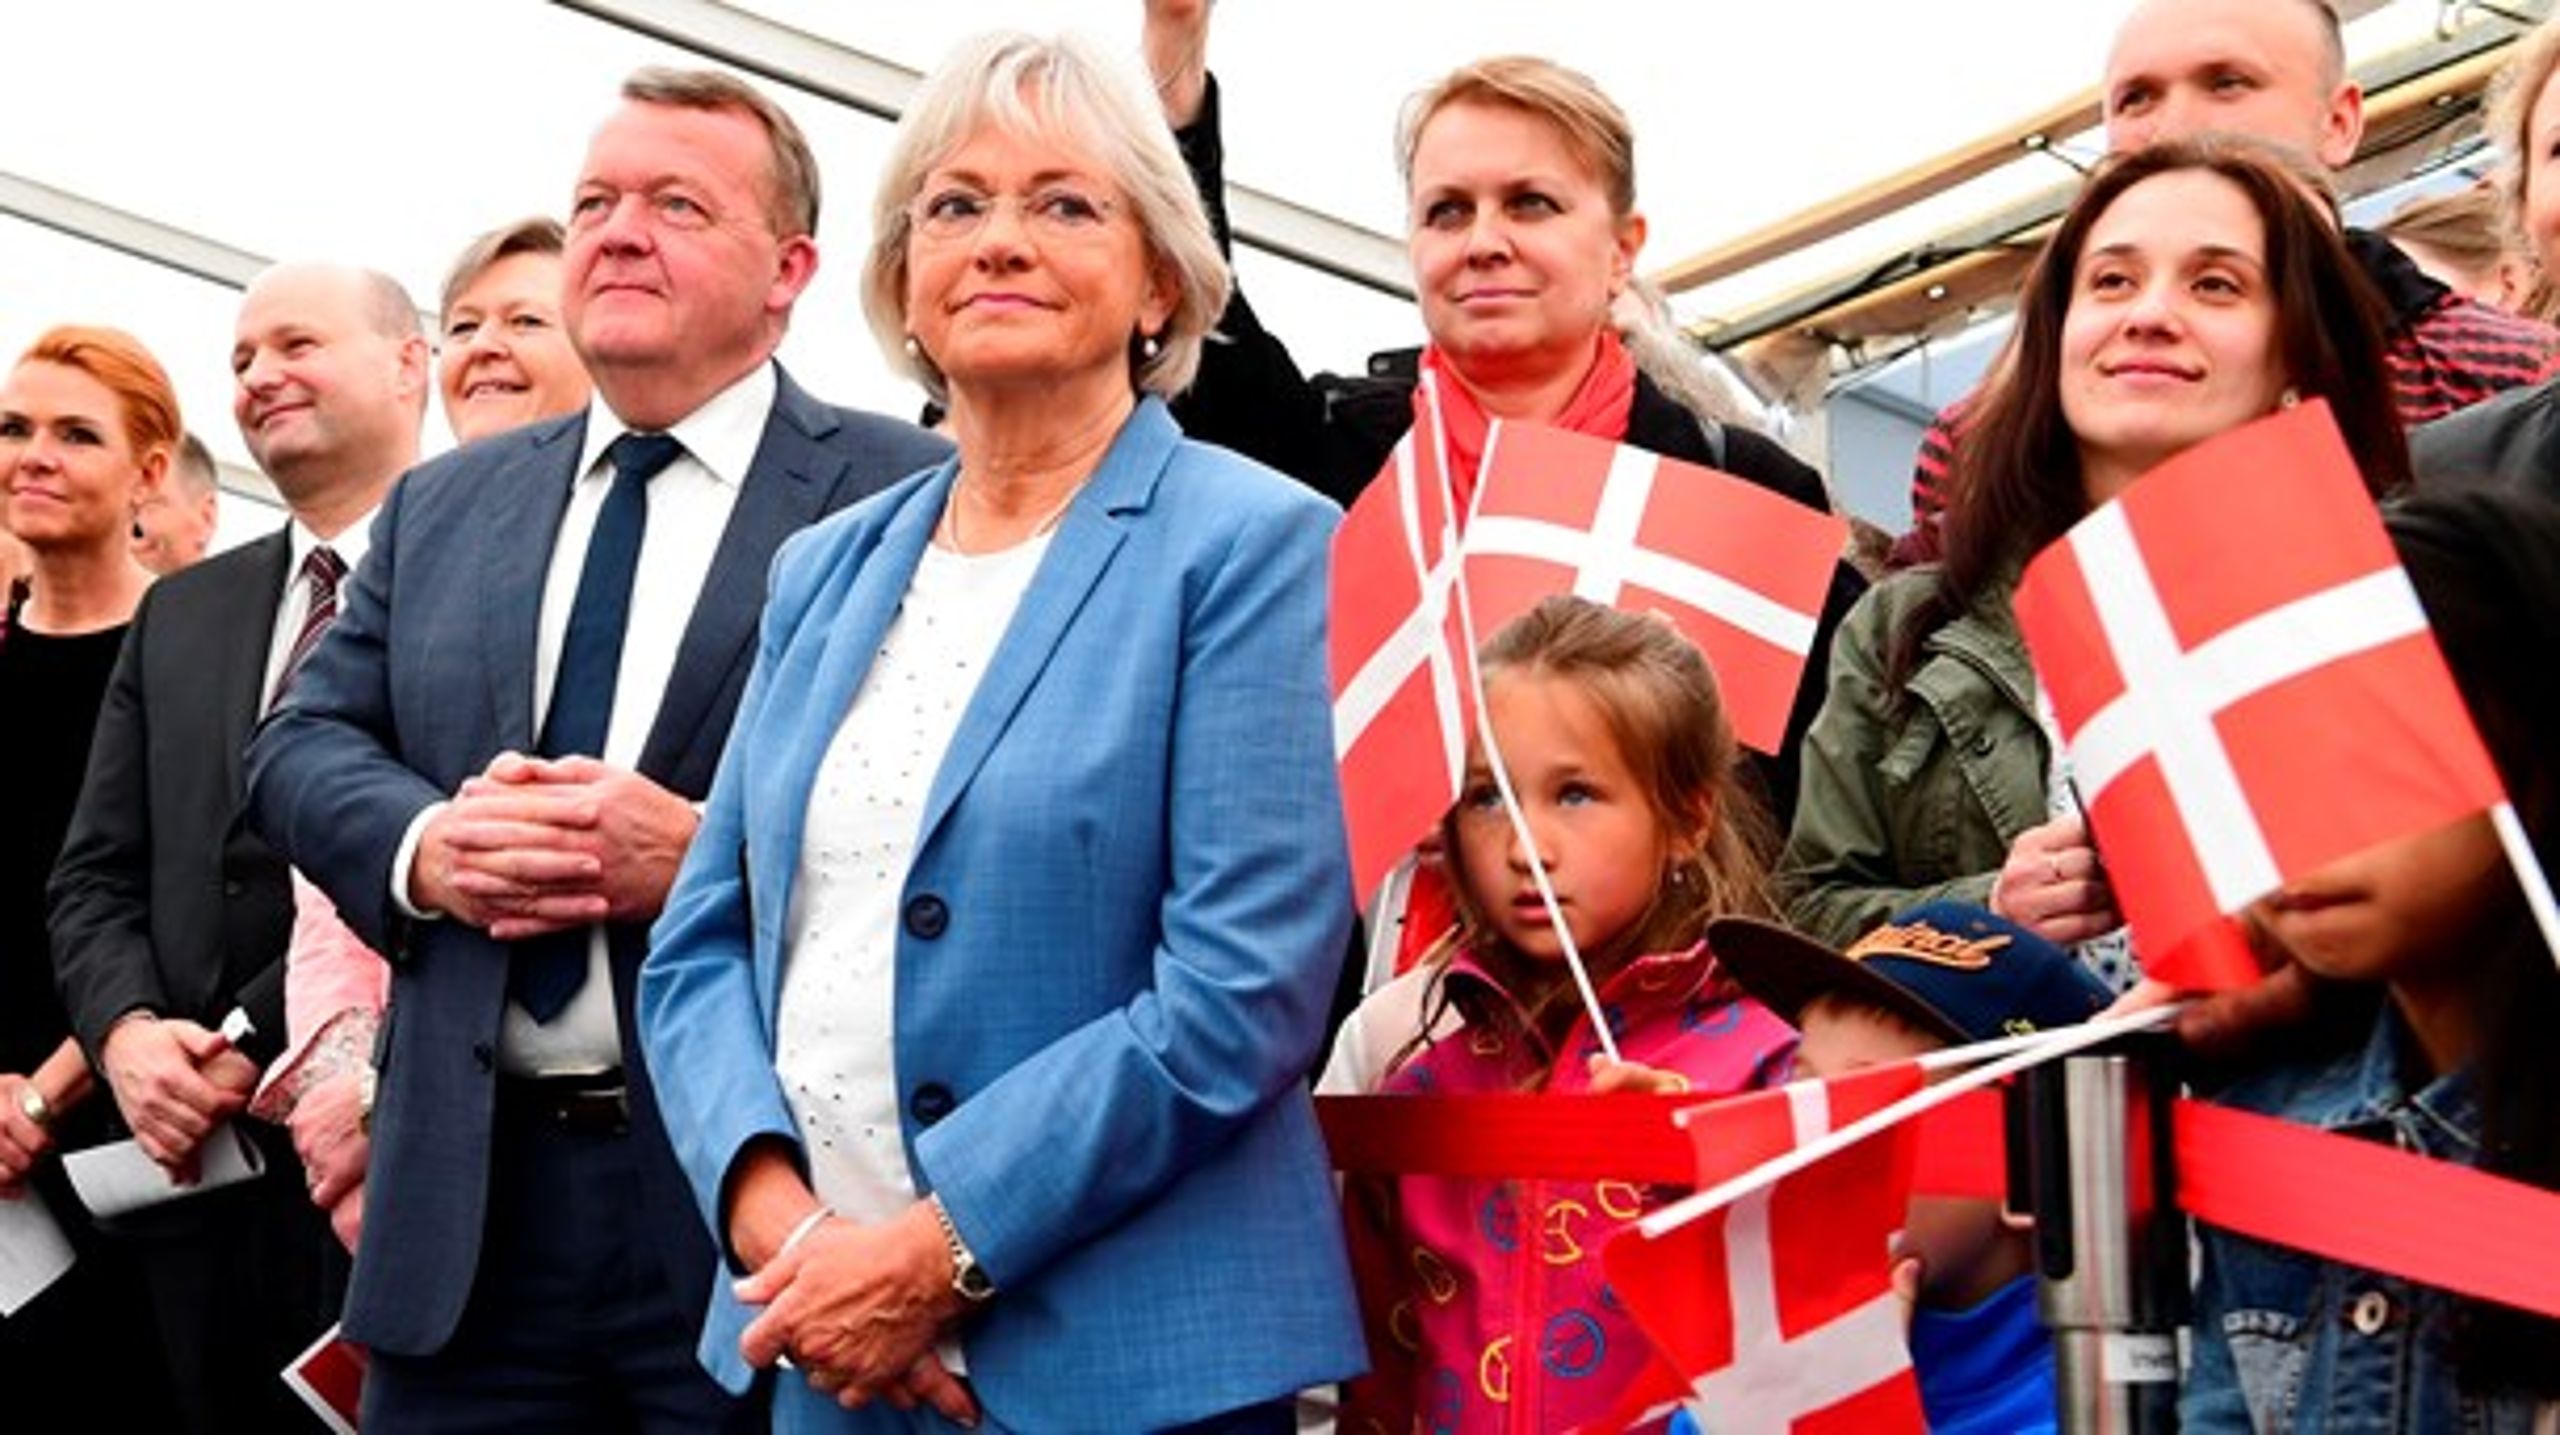 Det er vores pligt at videregive Danmark intakt til kommende generationer, skriver Pia Kjærsgaard (DF).&nbsp;